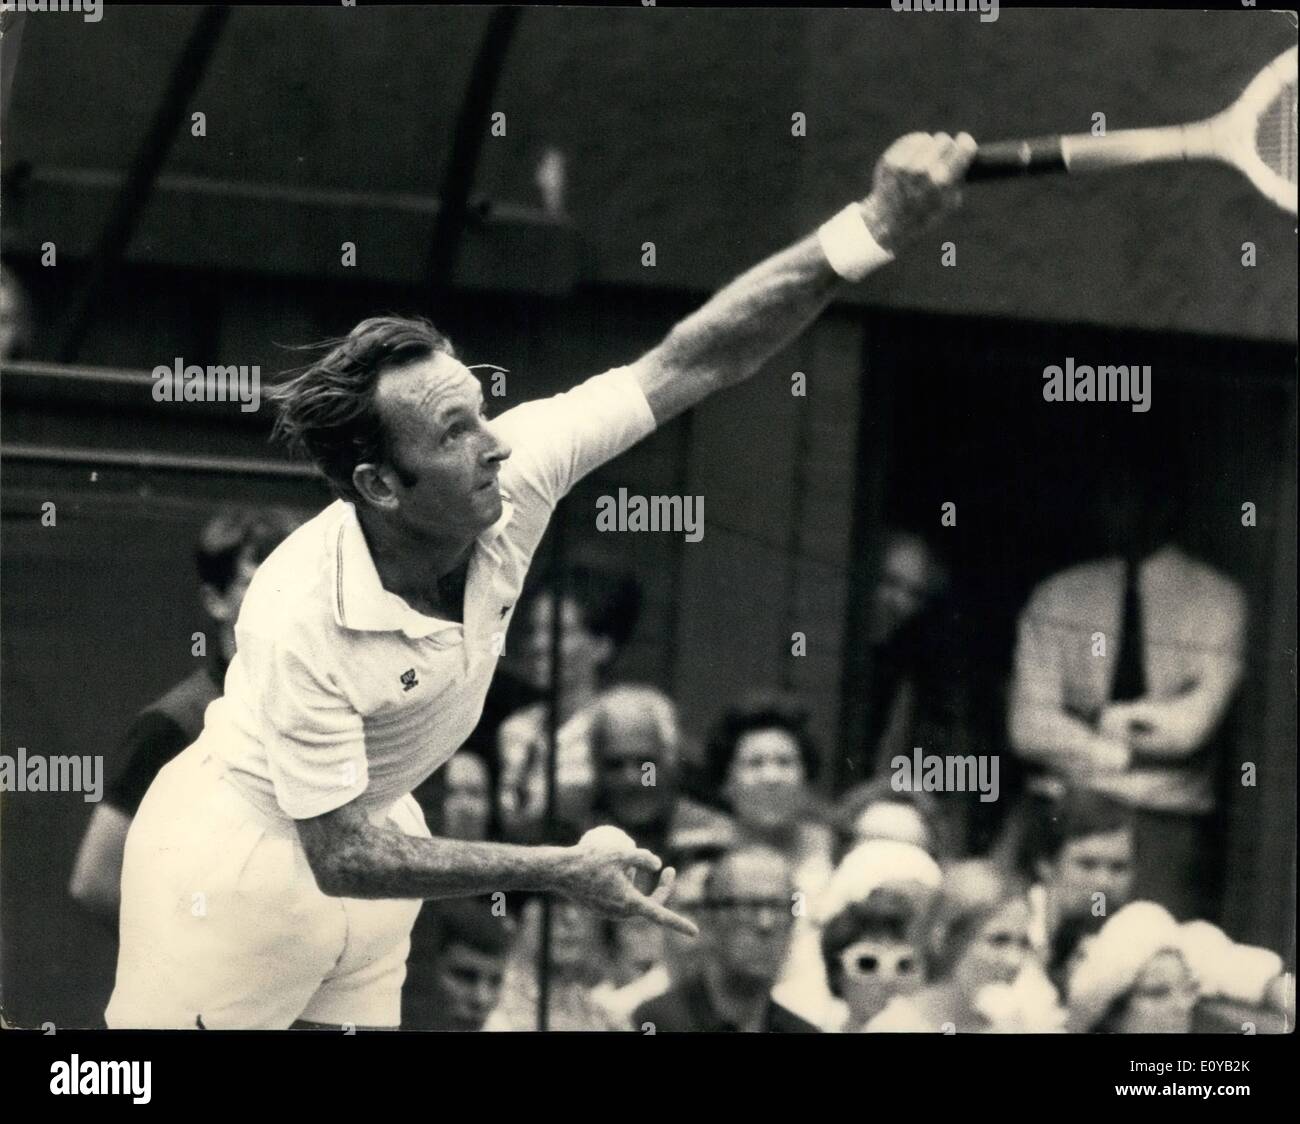 Juillet 07, 1969 - Championnats de tennis de Wimbledon Laver Australie Versus Ashe États-unis : Rod Laver Australie le vainqueur en titre Banque D'Images